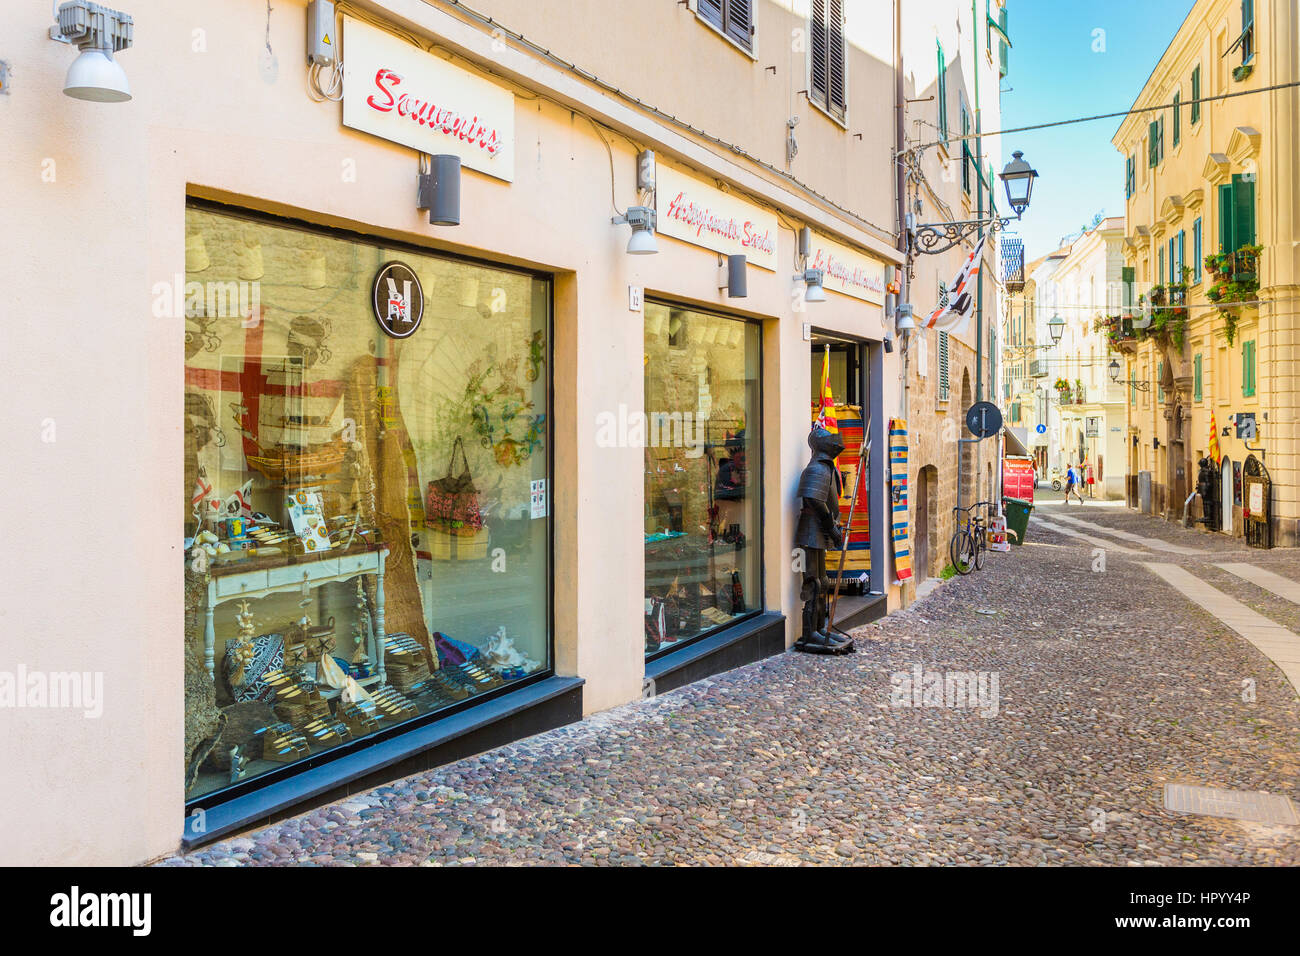 Scena di strada nel centro storico di Alghero, Sarssari, Sardegna, Italia Foto Stock